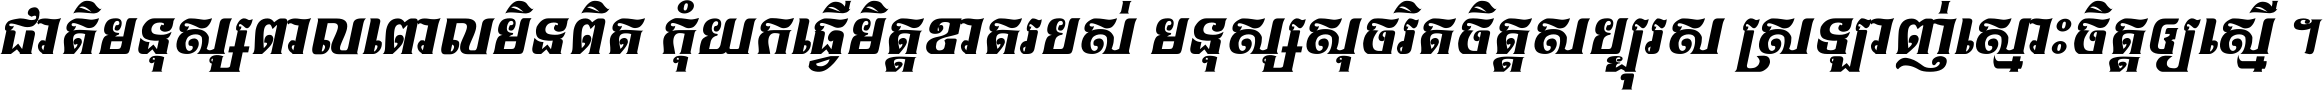 Kh Baphnom 05 Dang Sophea Italic